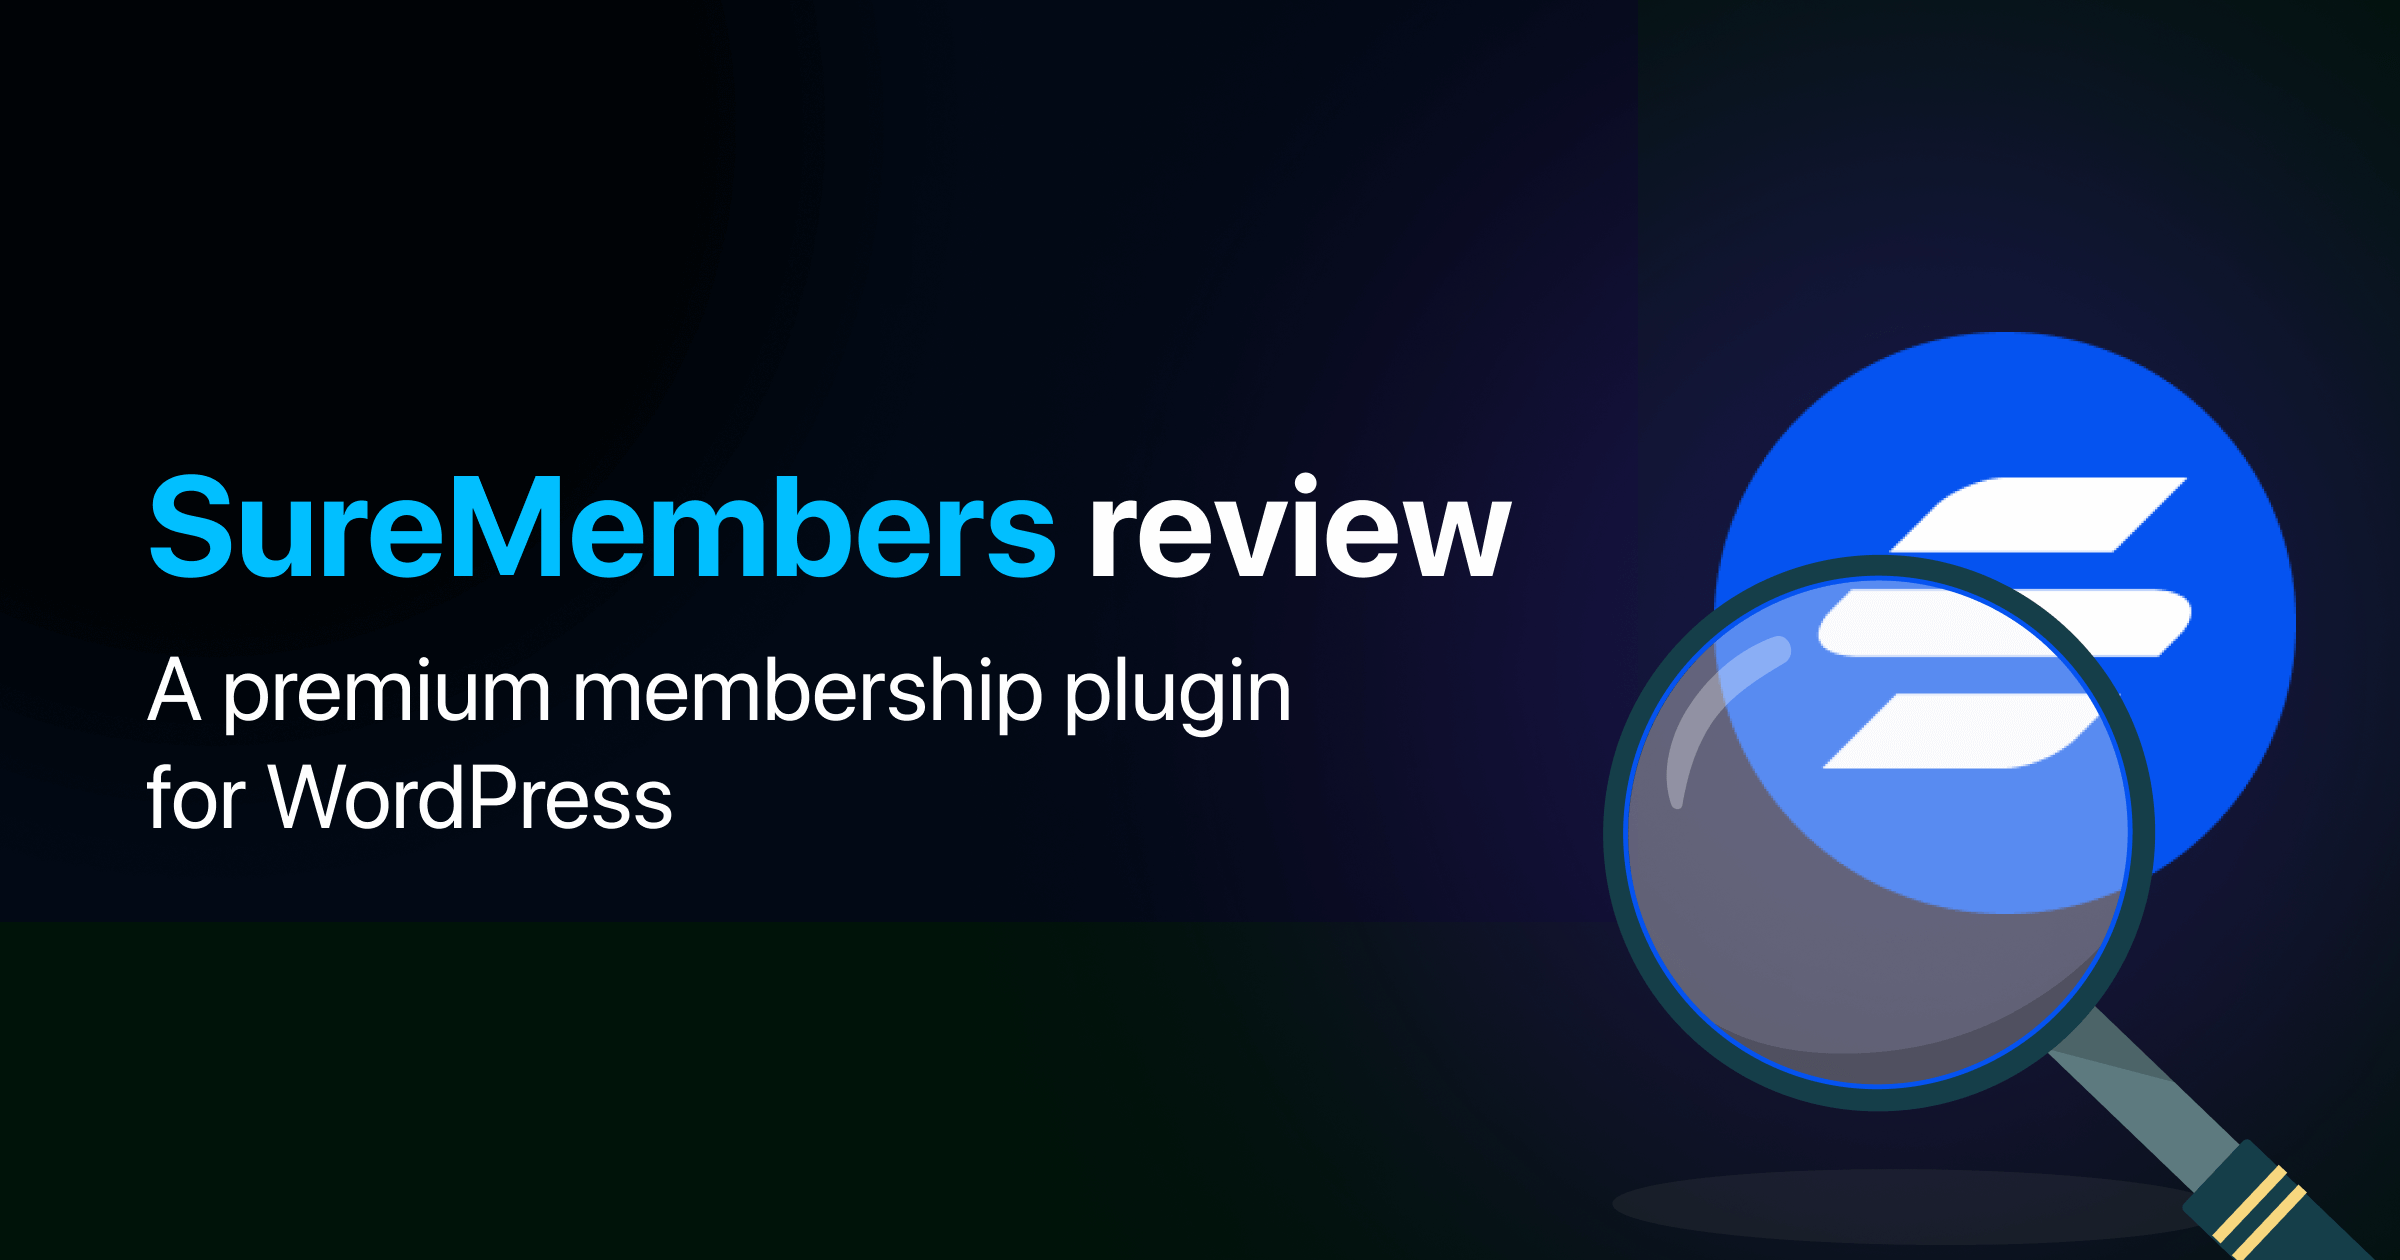 SureMembers review: A premium membership plugin for WordPress